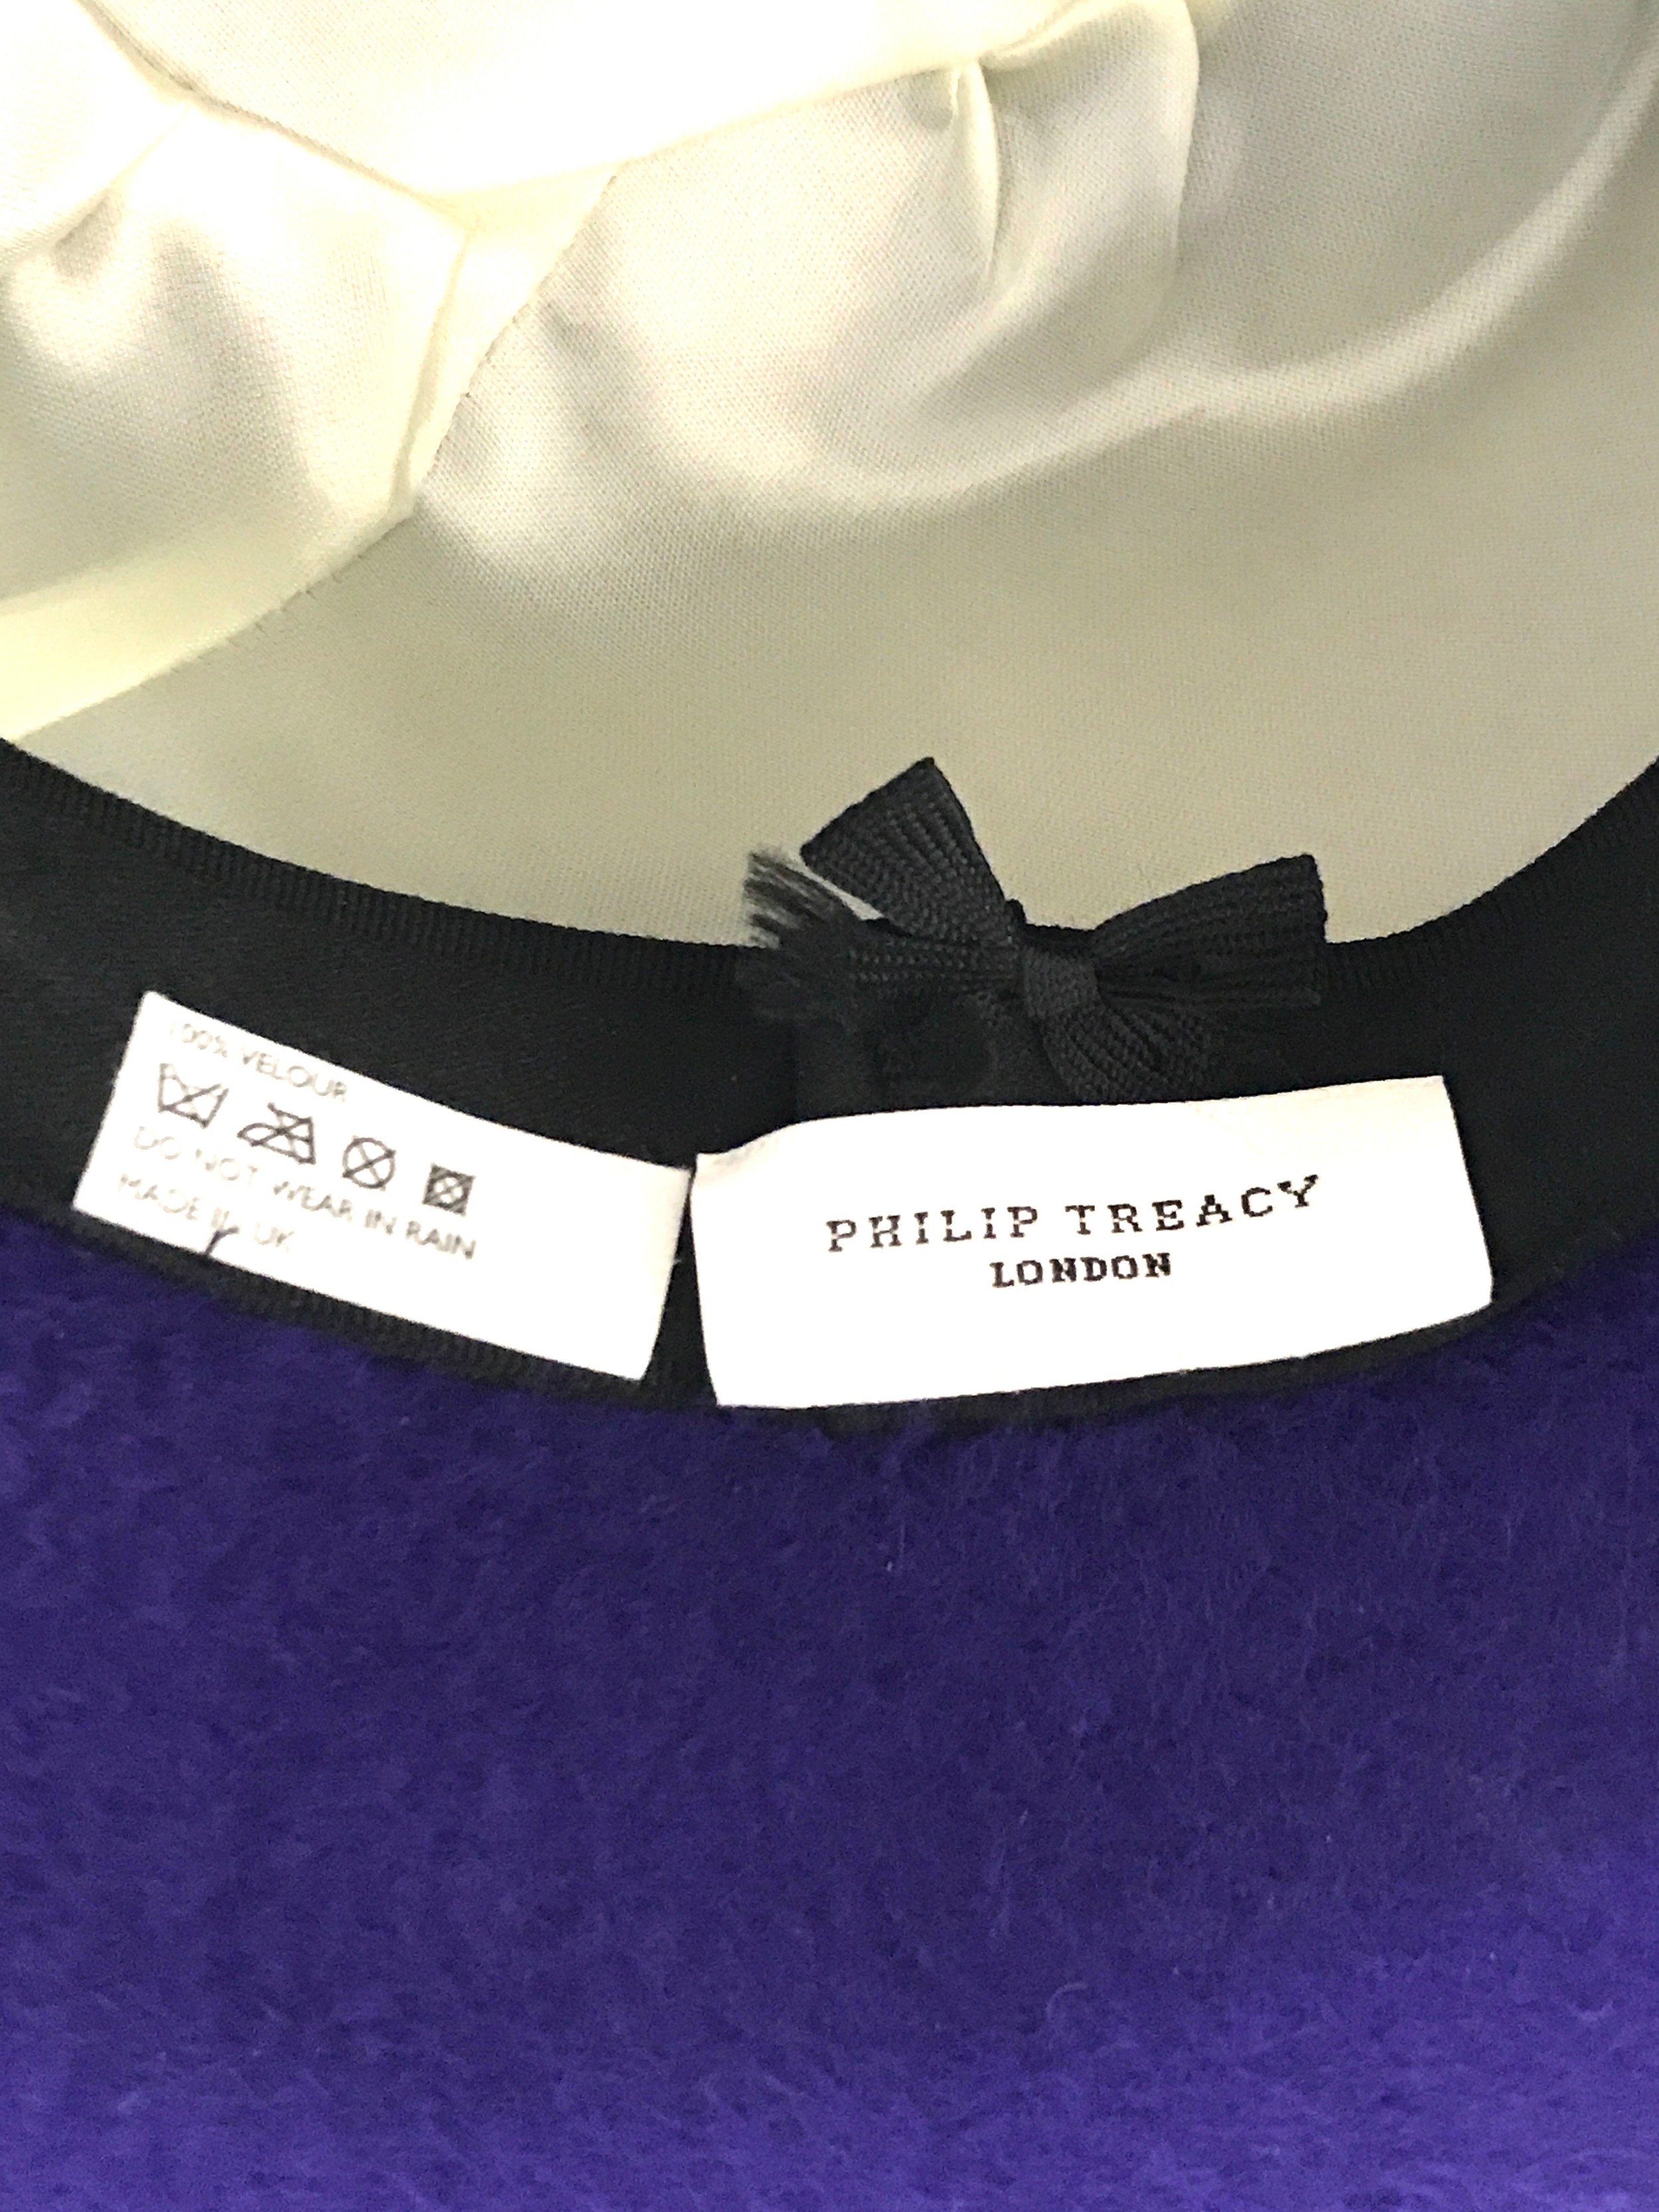 London Phillio Treacy Ladies hat - Image 3 of 3